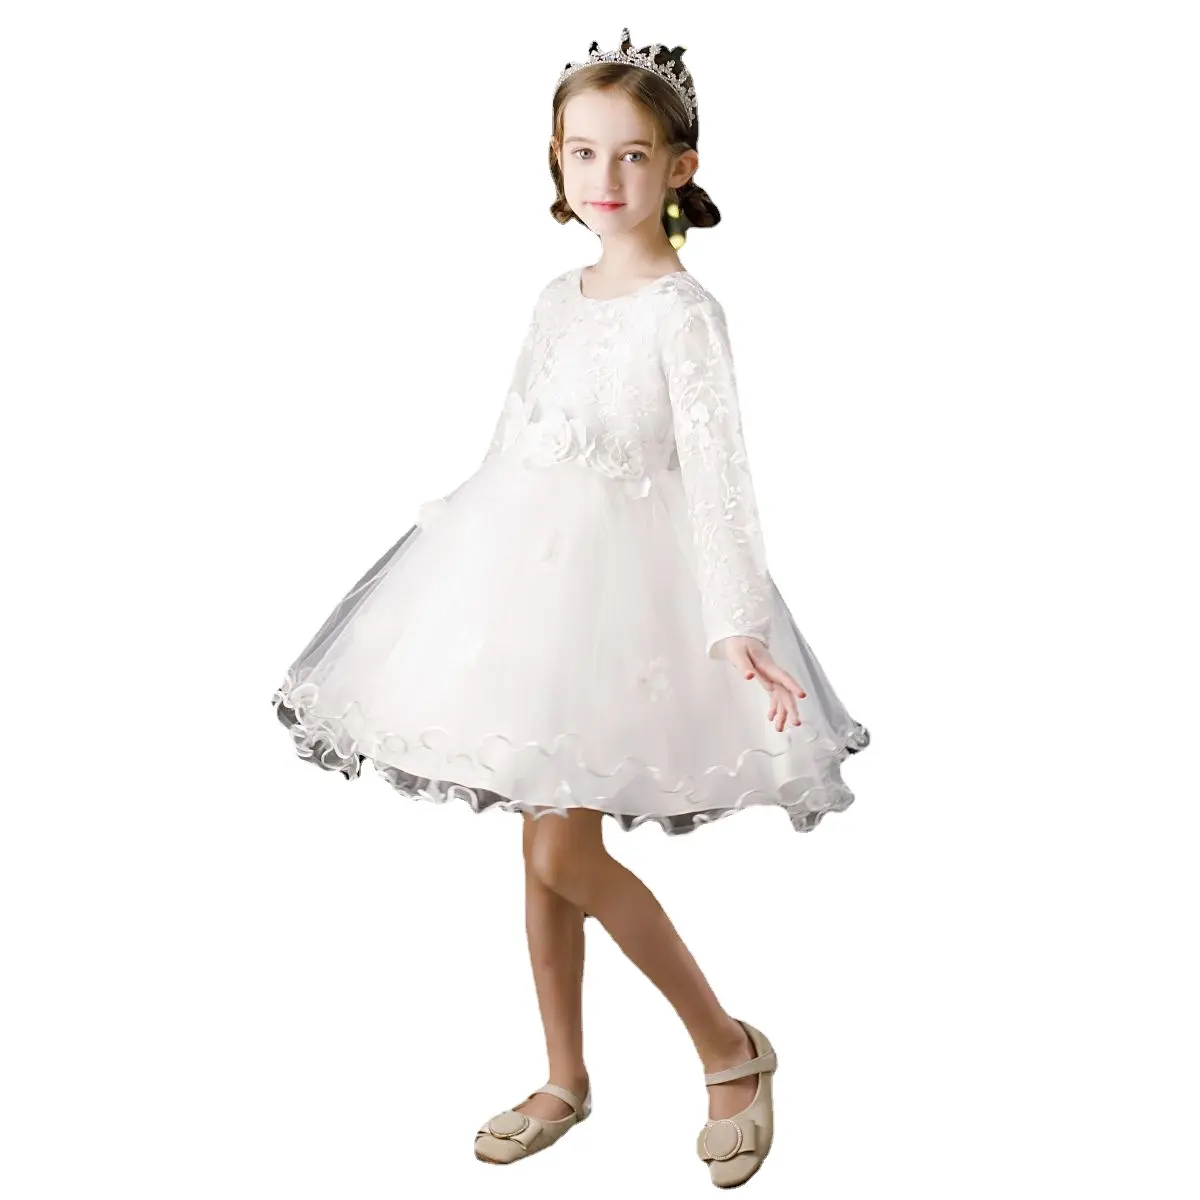 키즈 파티 드레스 훈제 어린이 의류 공주 드레스 소녀 드레스 아이들을위한 10-14 세 의상